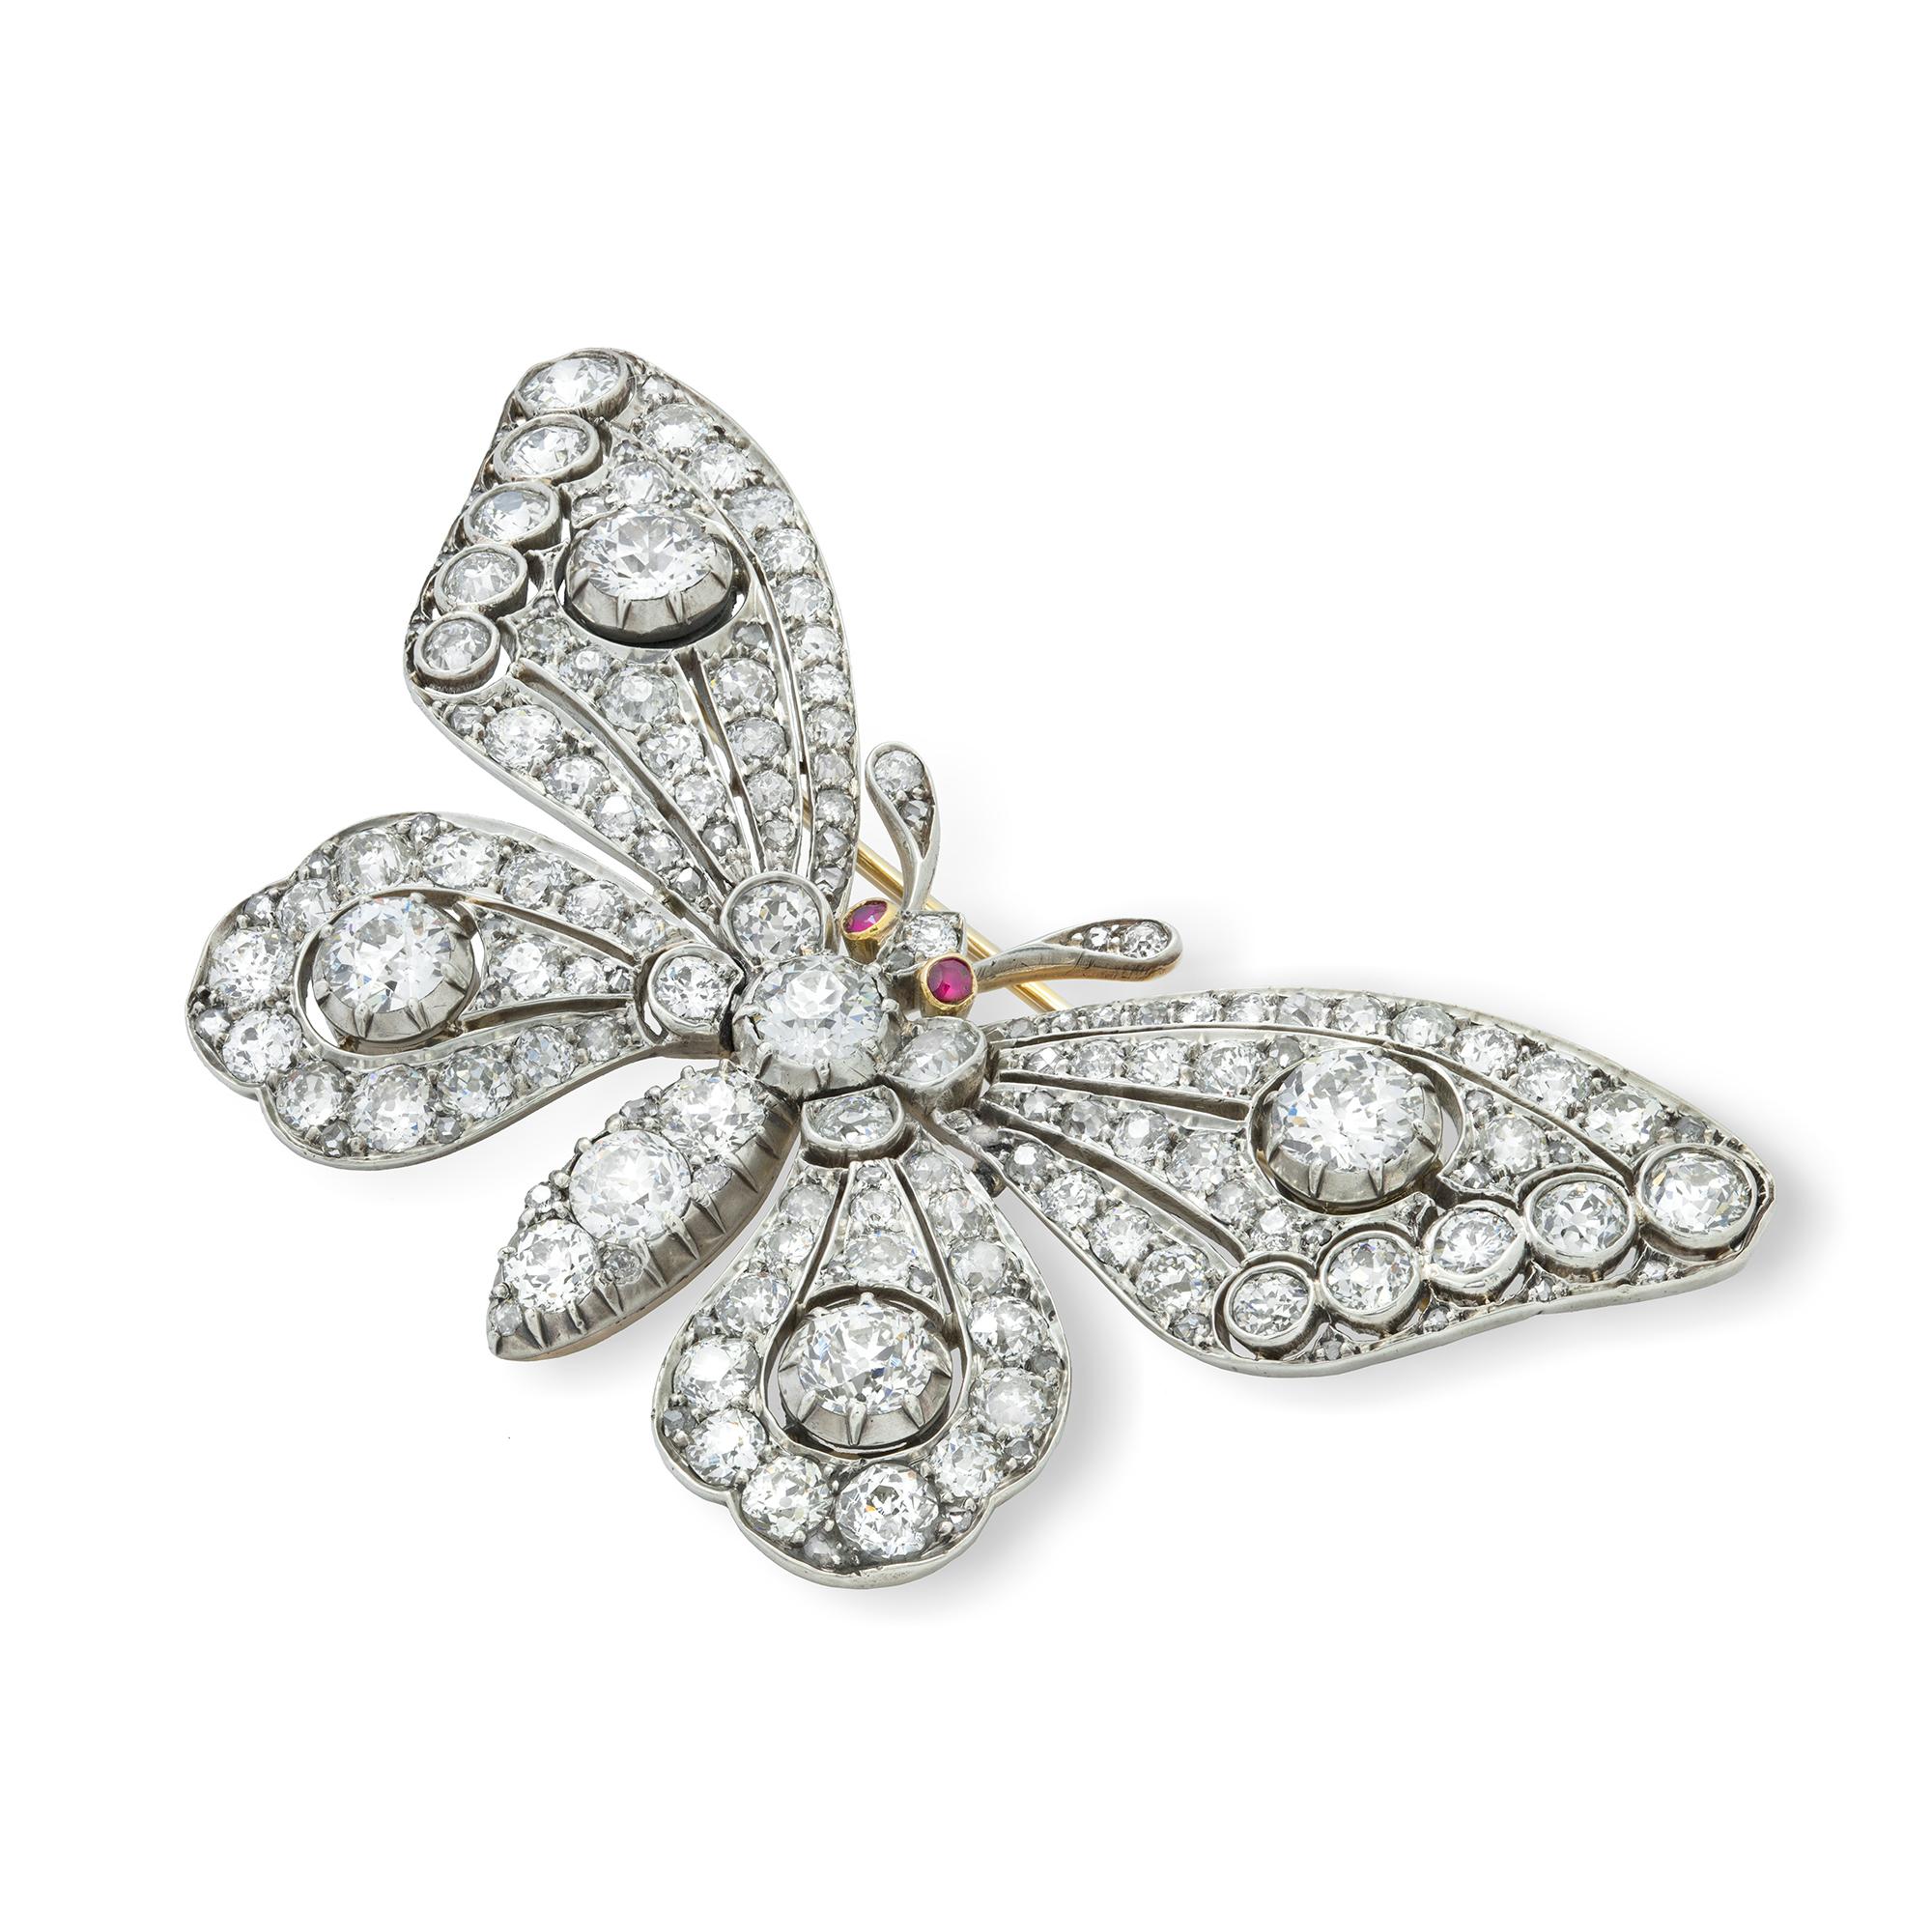 Eine prächtige spätviktorianische diamantbesetzte Schmetterlingsbrosche in Form eines Schmetterlings, der Körper, die durchbrochenen Flügel und der Kopf sind durchgehend mit alten Diamanten im Brillant- und Rosenschliff besetzt, mit einem